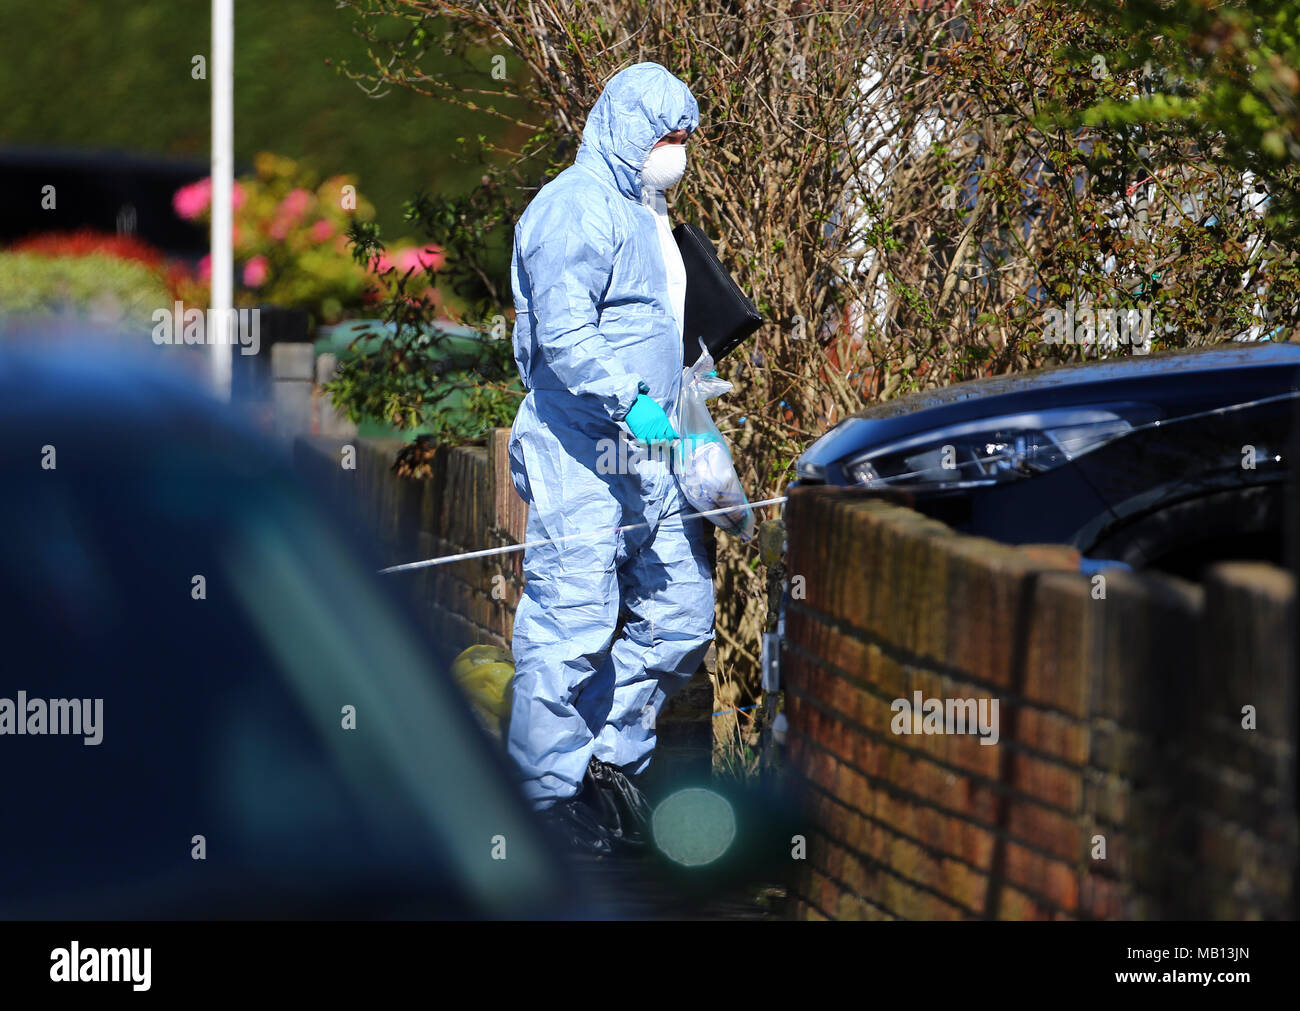 Les agents de police scientifique sur les lieux dans la région de South Park Crescent à Hither Green, Londres, après un pensionné a été arrêté, soupçonné de meurtre après avoir mortellement blessé un intrus lors d'un cambriolage suspect à son domicile hier. Banque D'Images